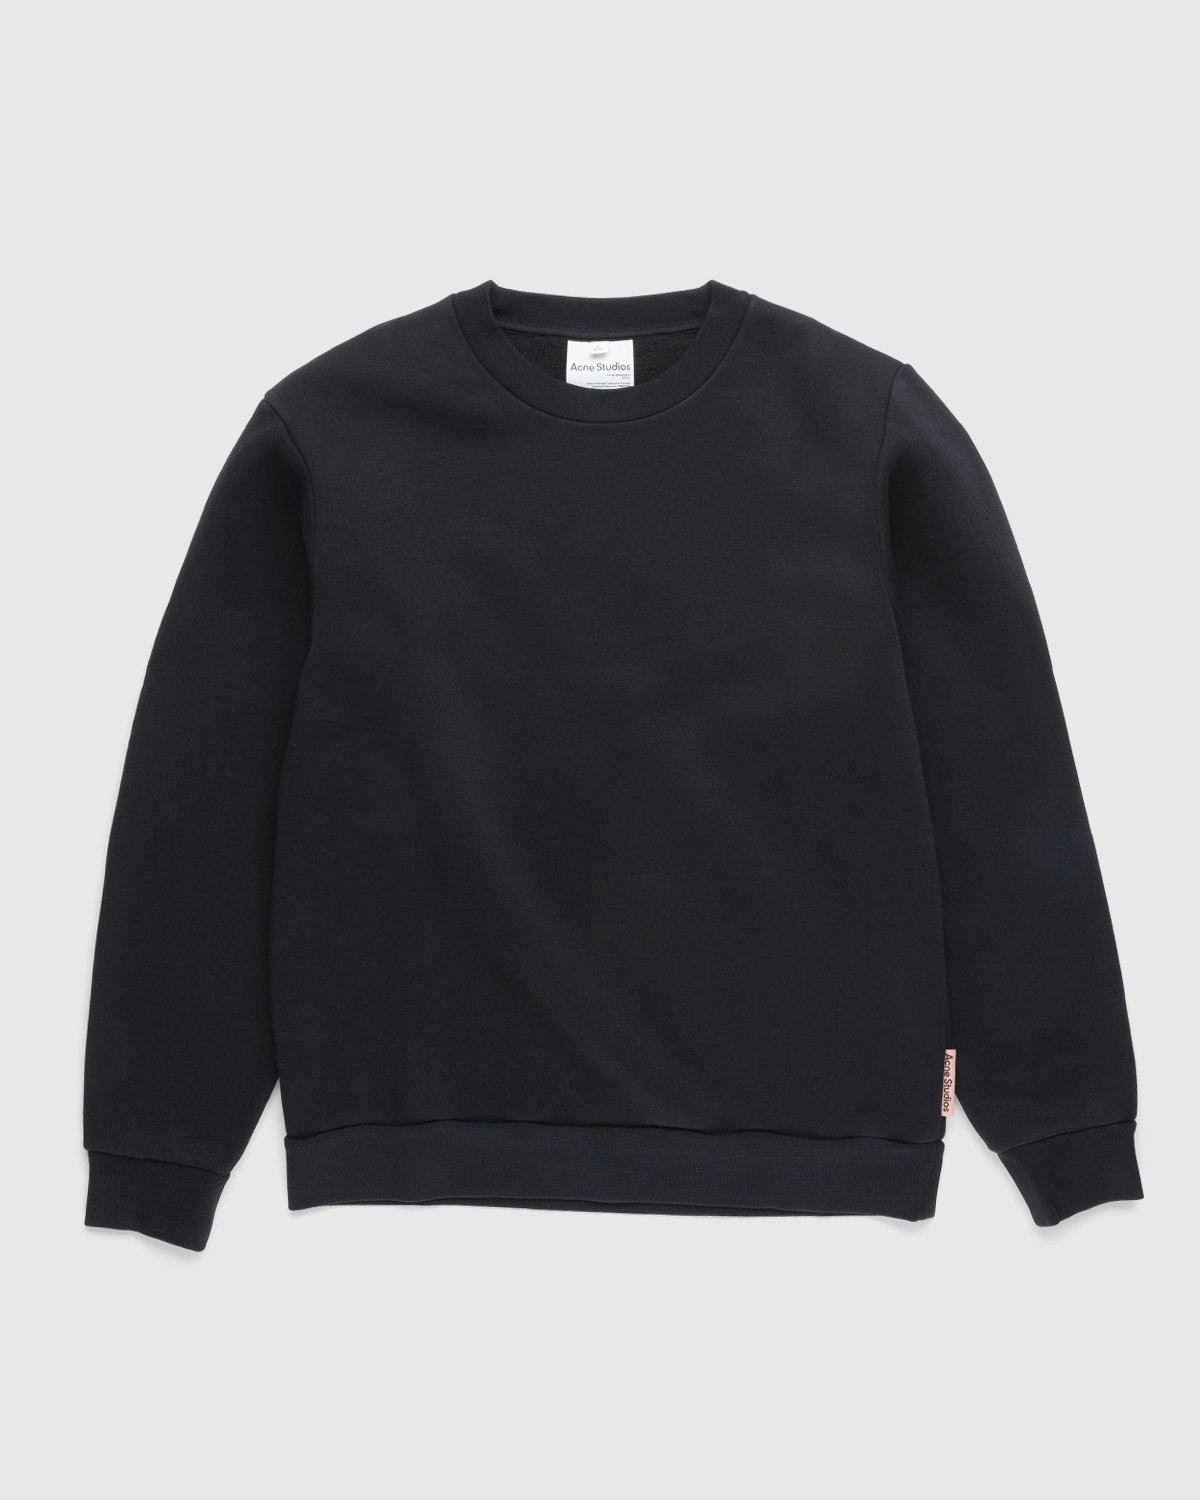 Acne Studios - Brushed Sweatshirt Black - Clothing - Black - Image 1